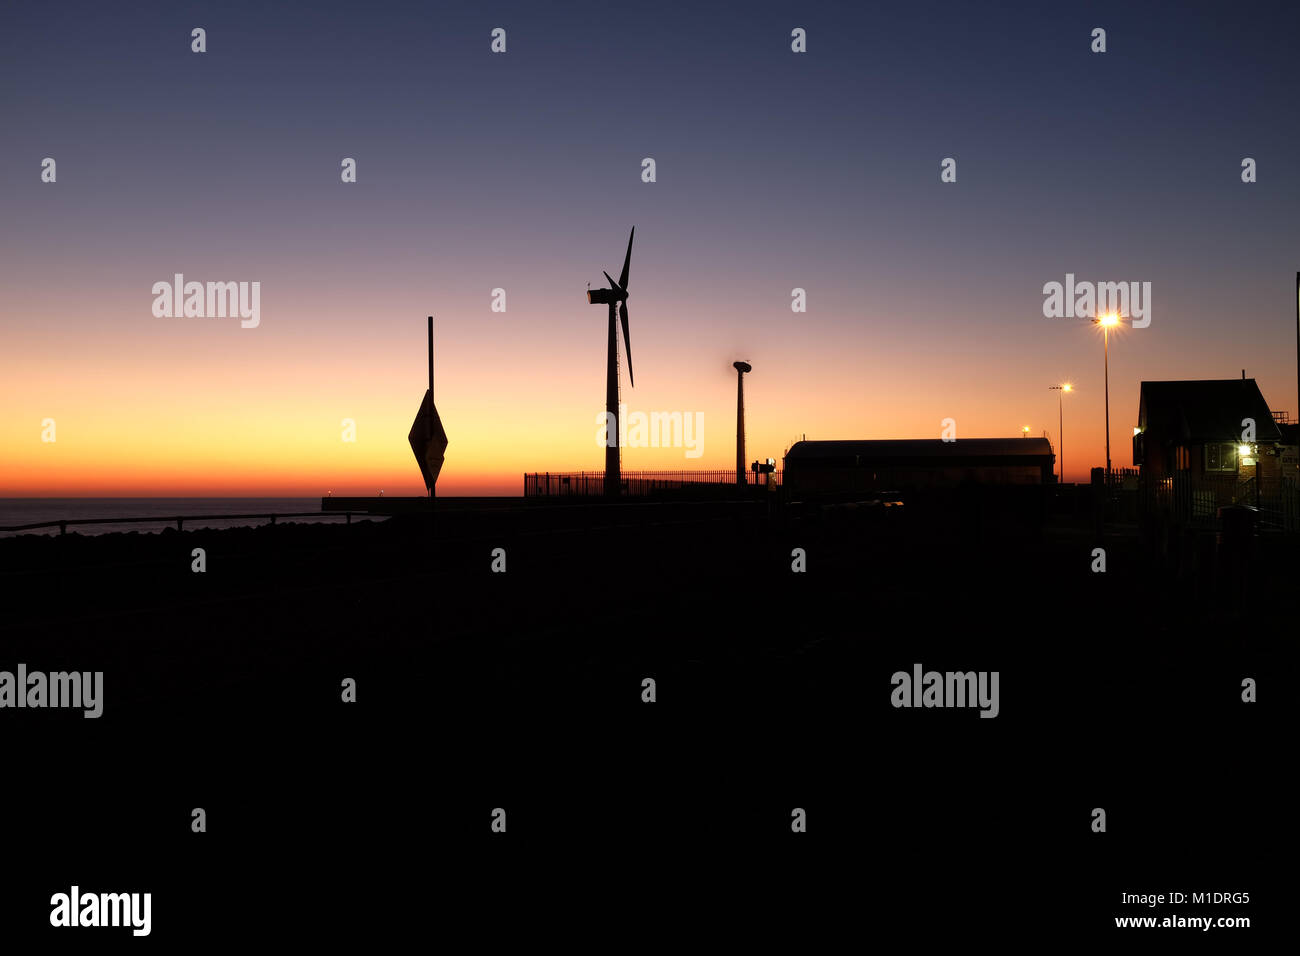 Silhouettes des éoliennes au crépuscule, Port Shoreham, Shoreham-by-Sea, West Sussex, Angleterre, Royaume-Uni. Banque D'Images